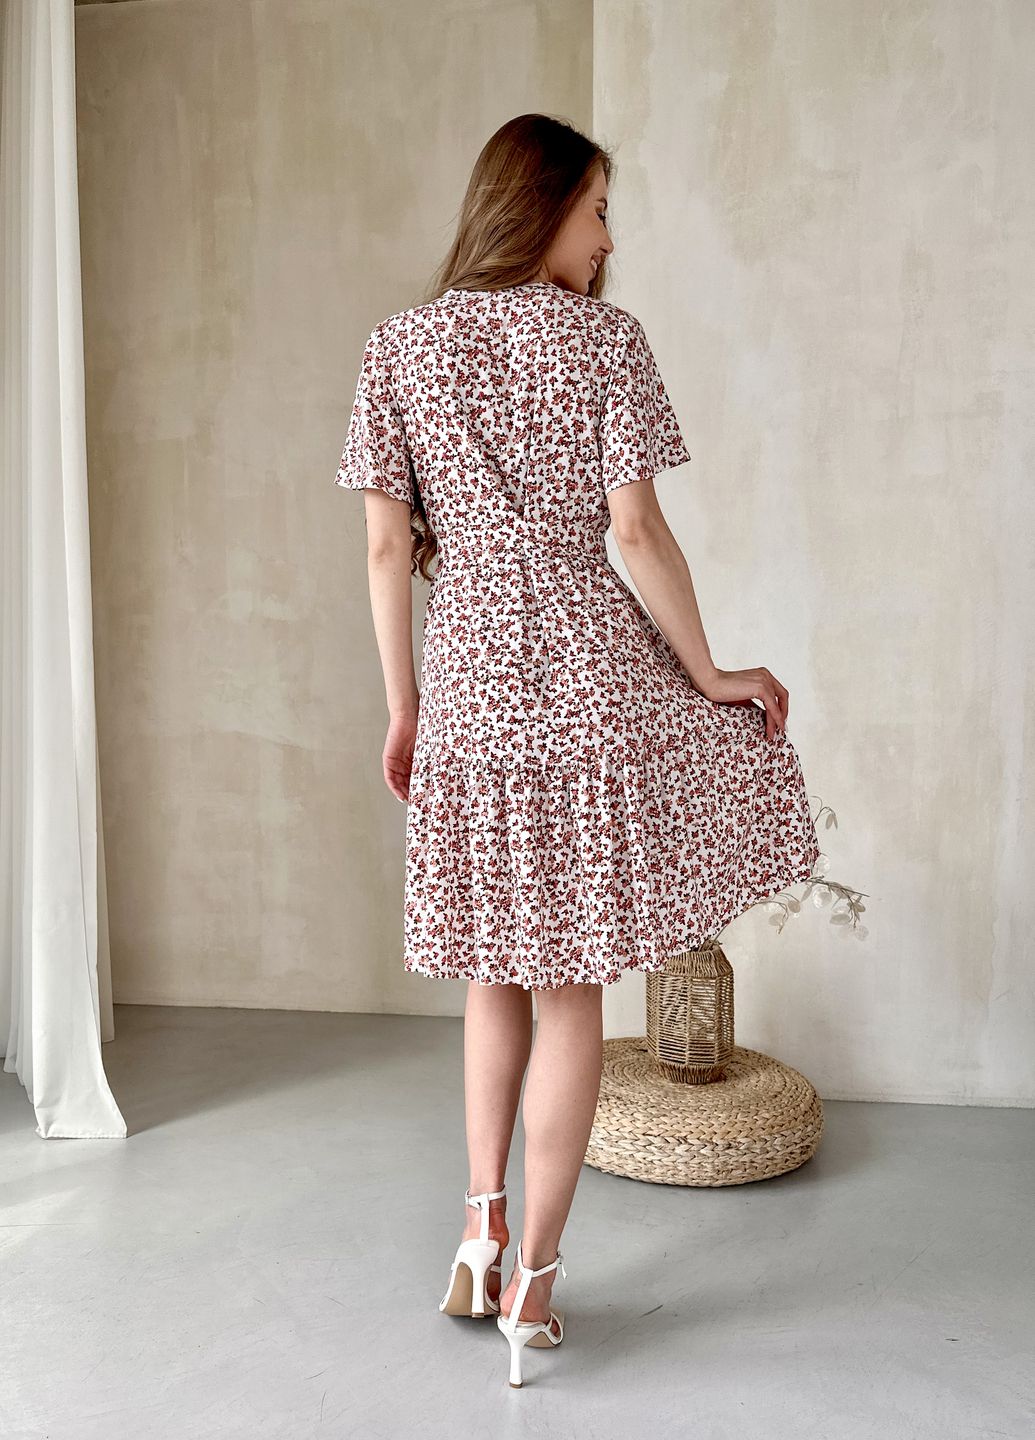 Купить Женское платье до колена с цветочным принтом и пояском белое Merlini Маренго 700000242, размер 42-44 (S-M) в интернет-магазине